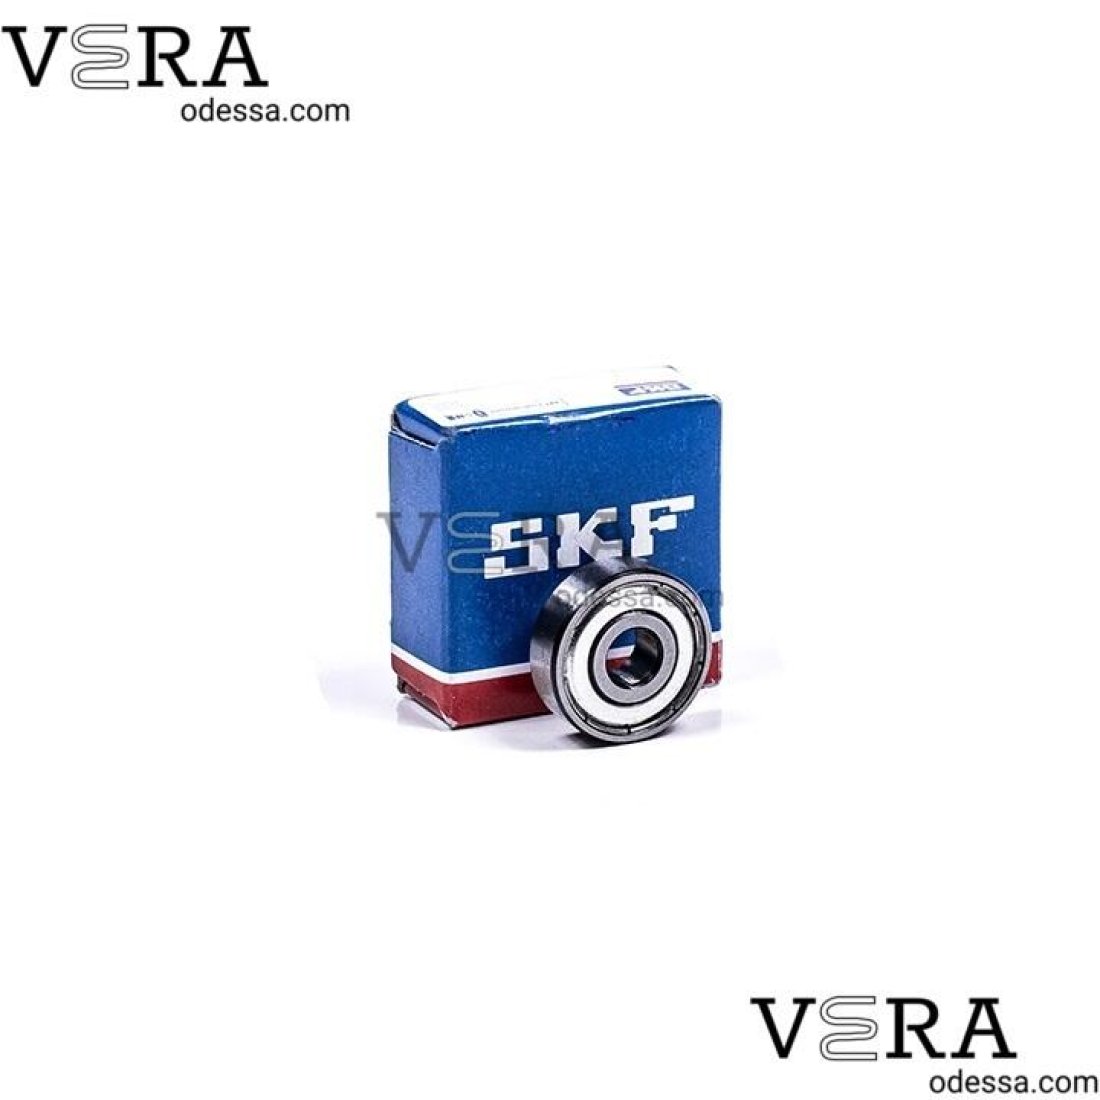 Підшипники Skf 608 – 2Z/c3 оптом, фотографія 1